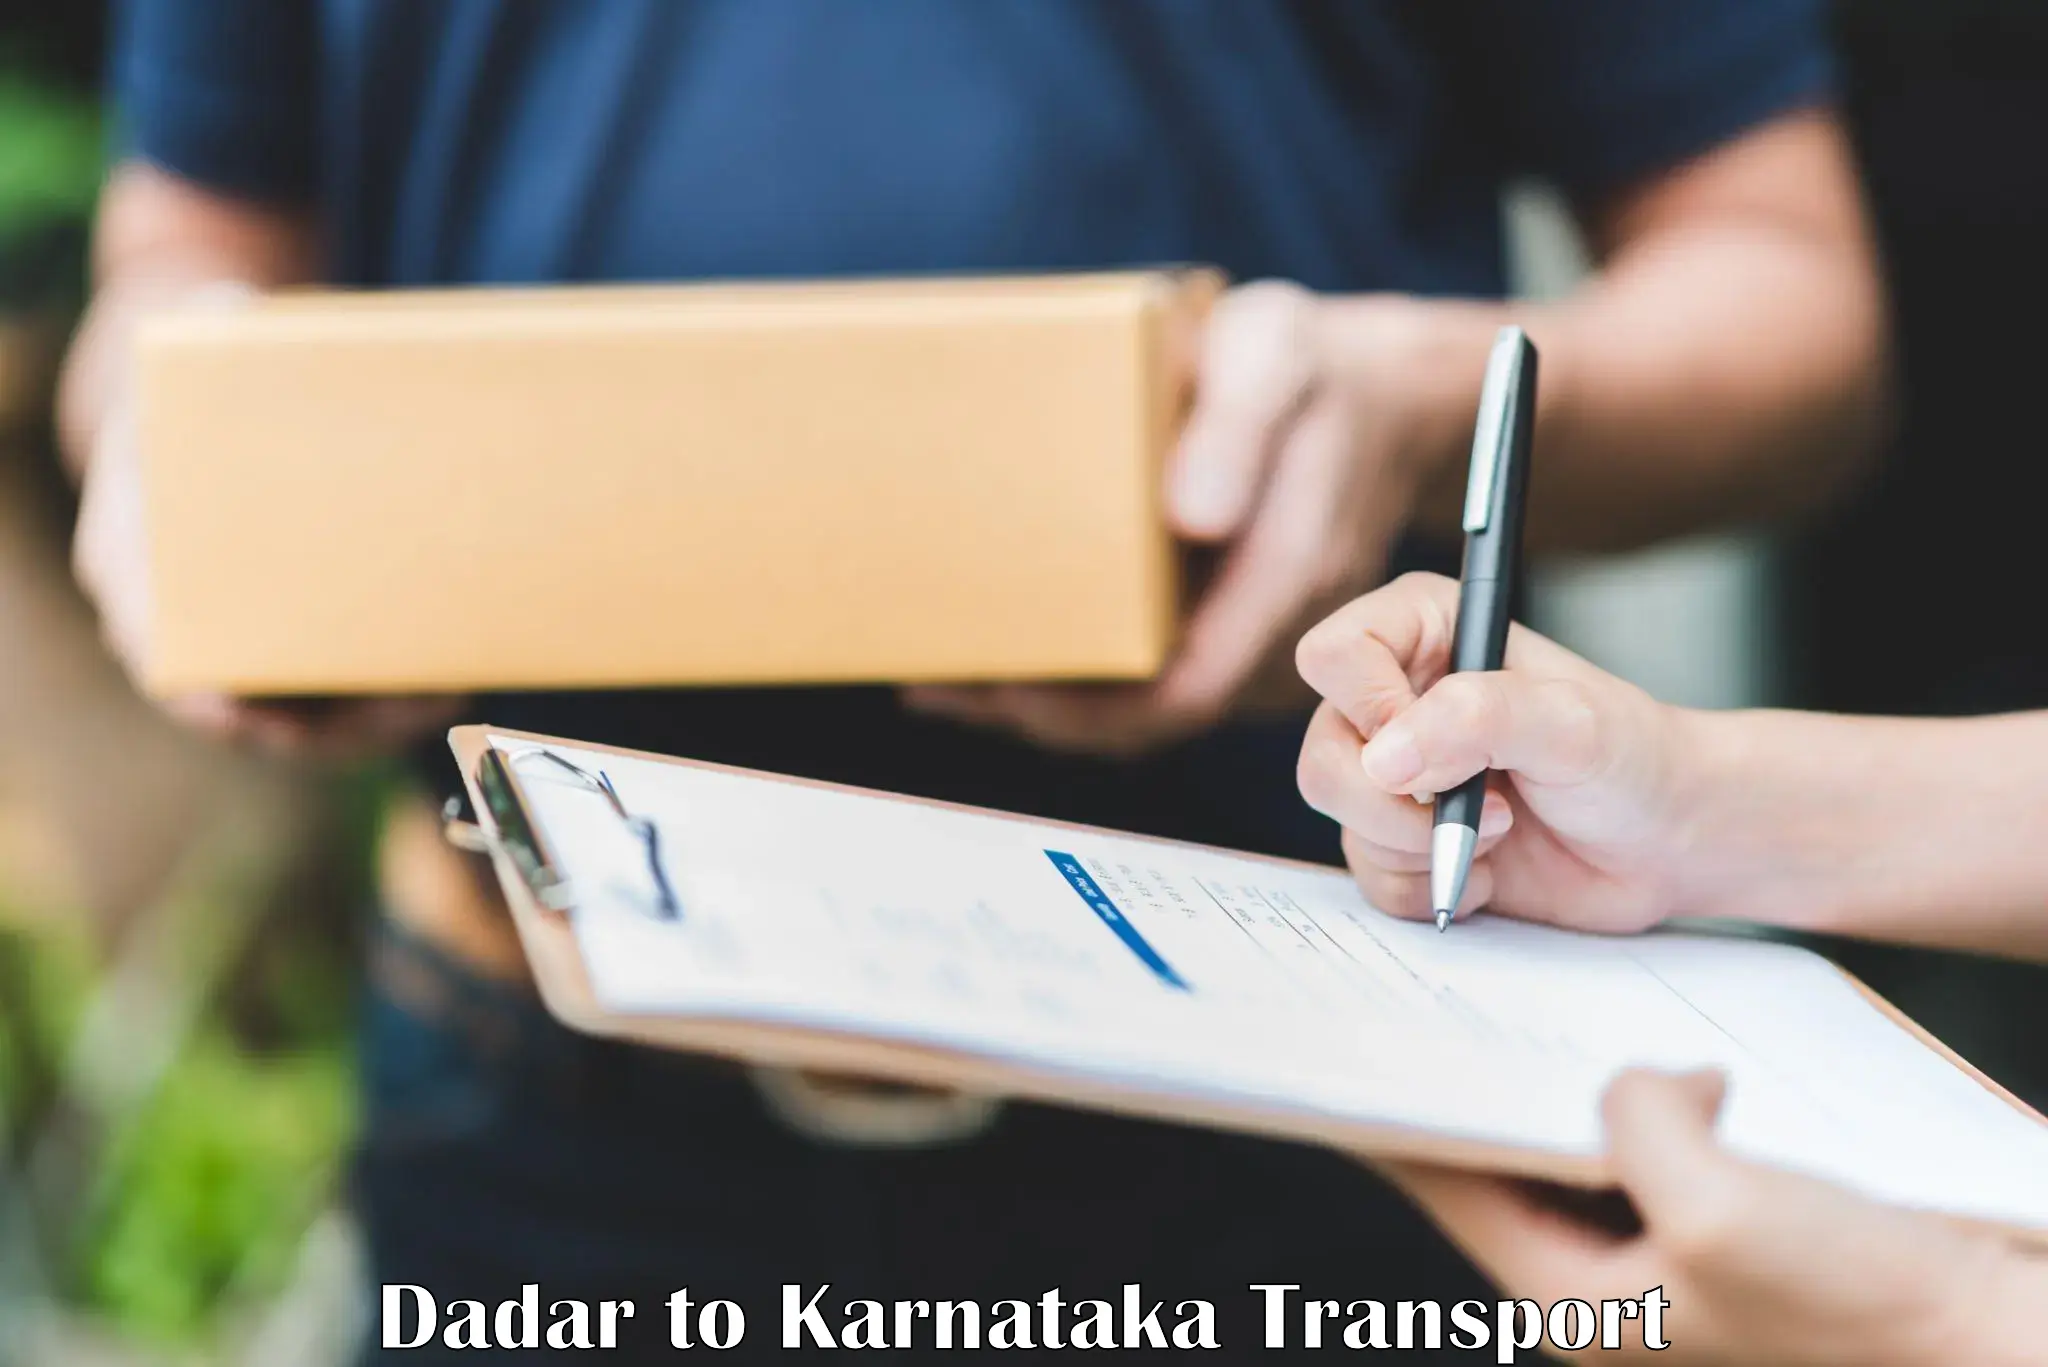 Cargo train transport services Dadar to Kanjarakatte